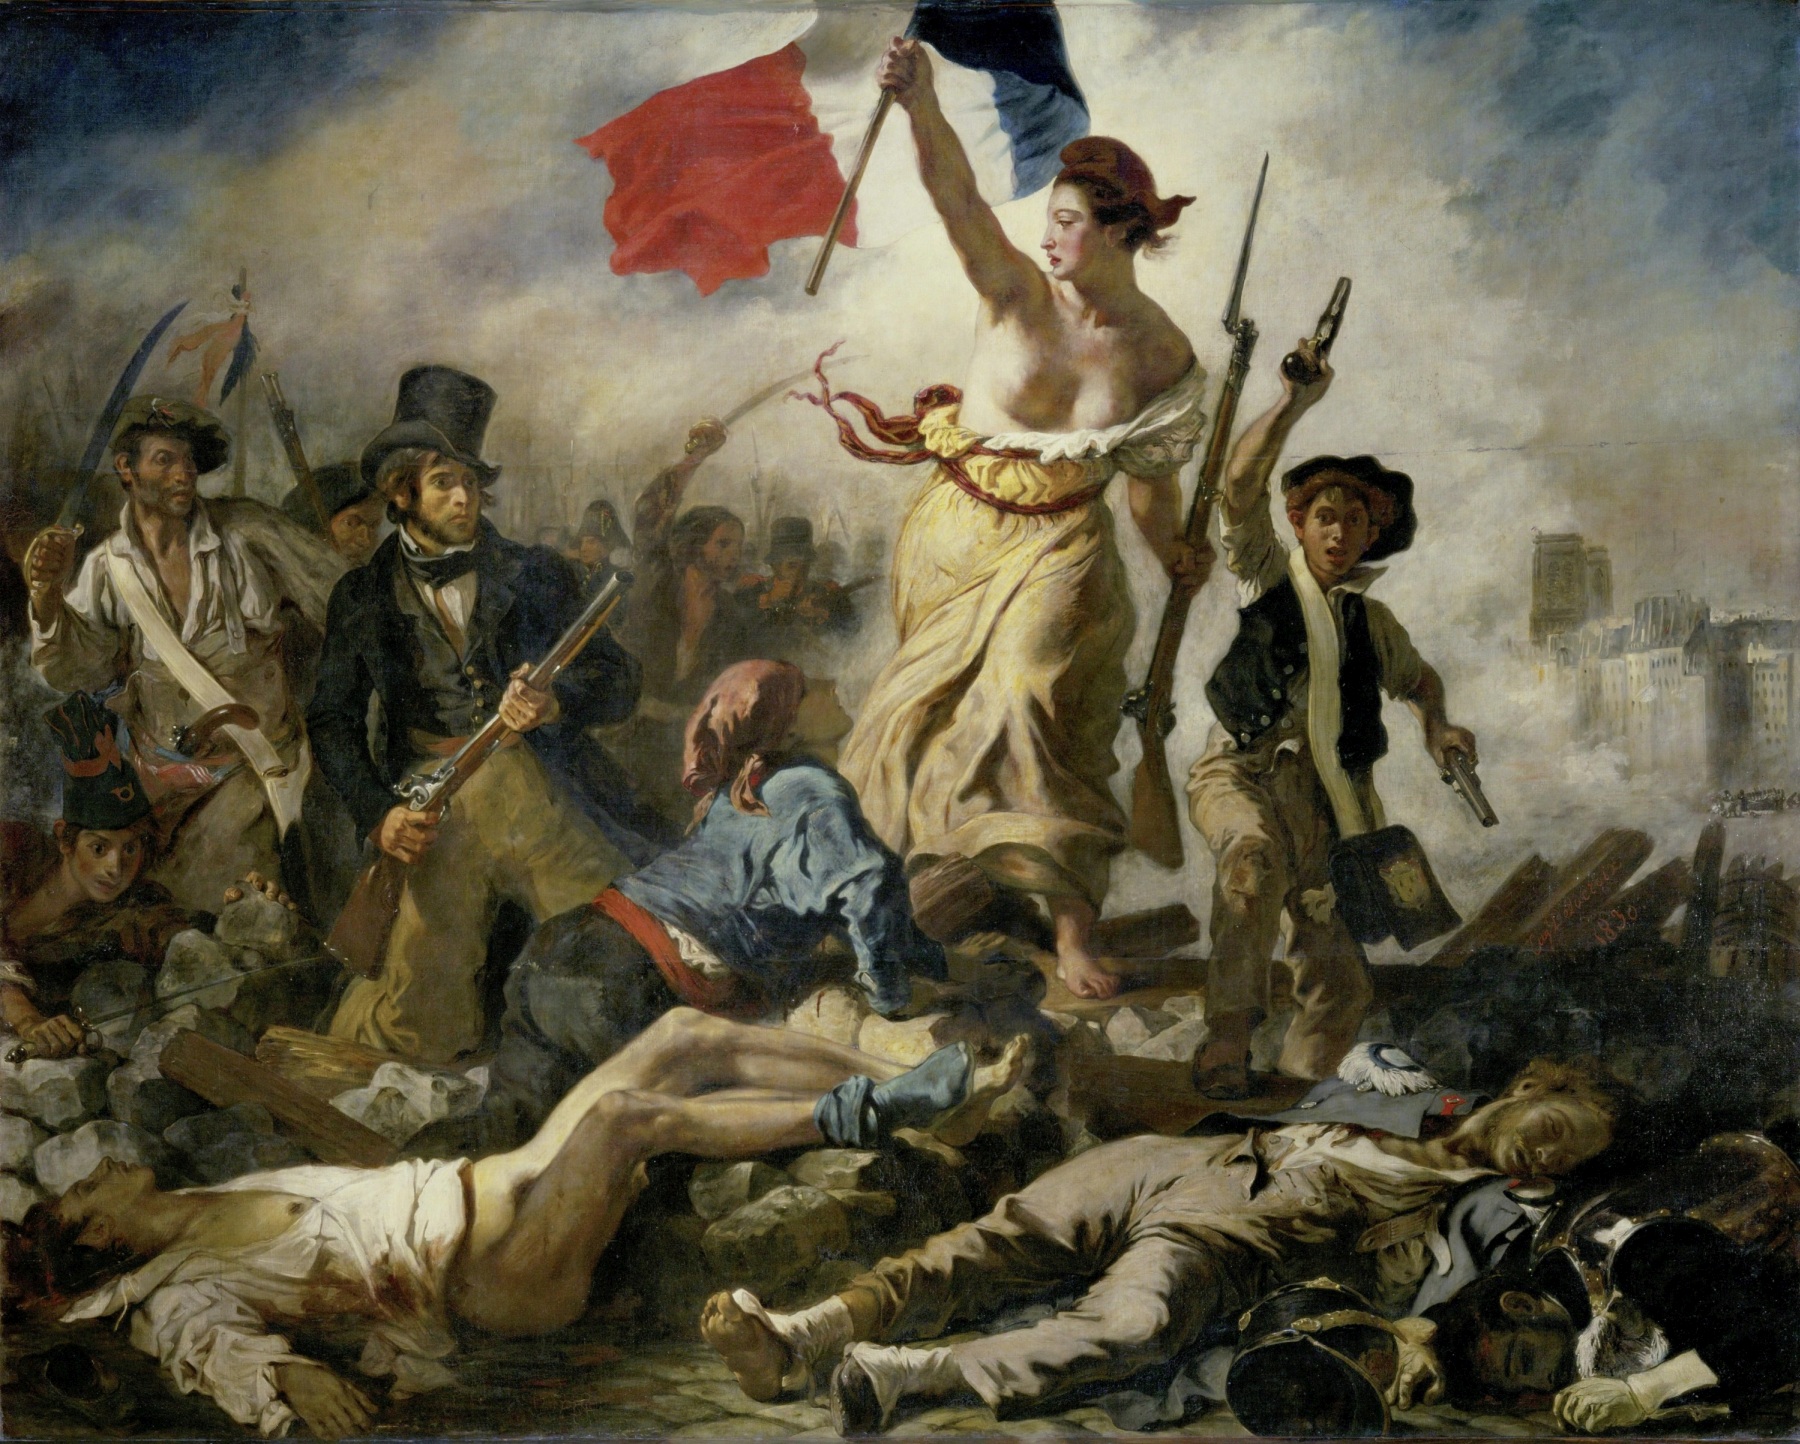 Ikonický obraz Eugèna Delacroixe Svoboda vede lid na barikády z roku 1830 představuje alegorický výjev z francouzské revoluce.